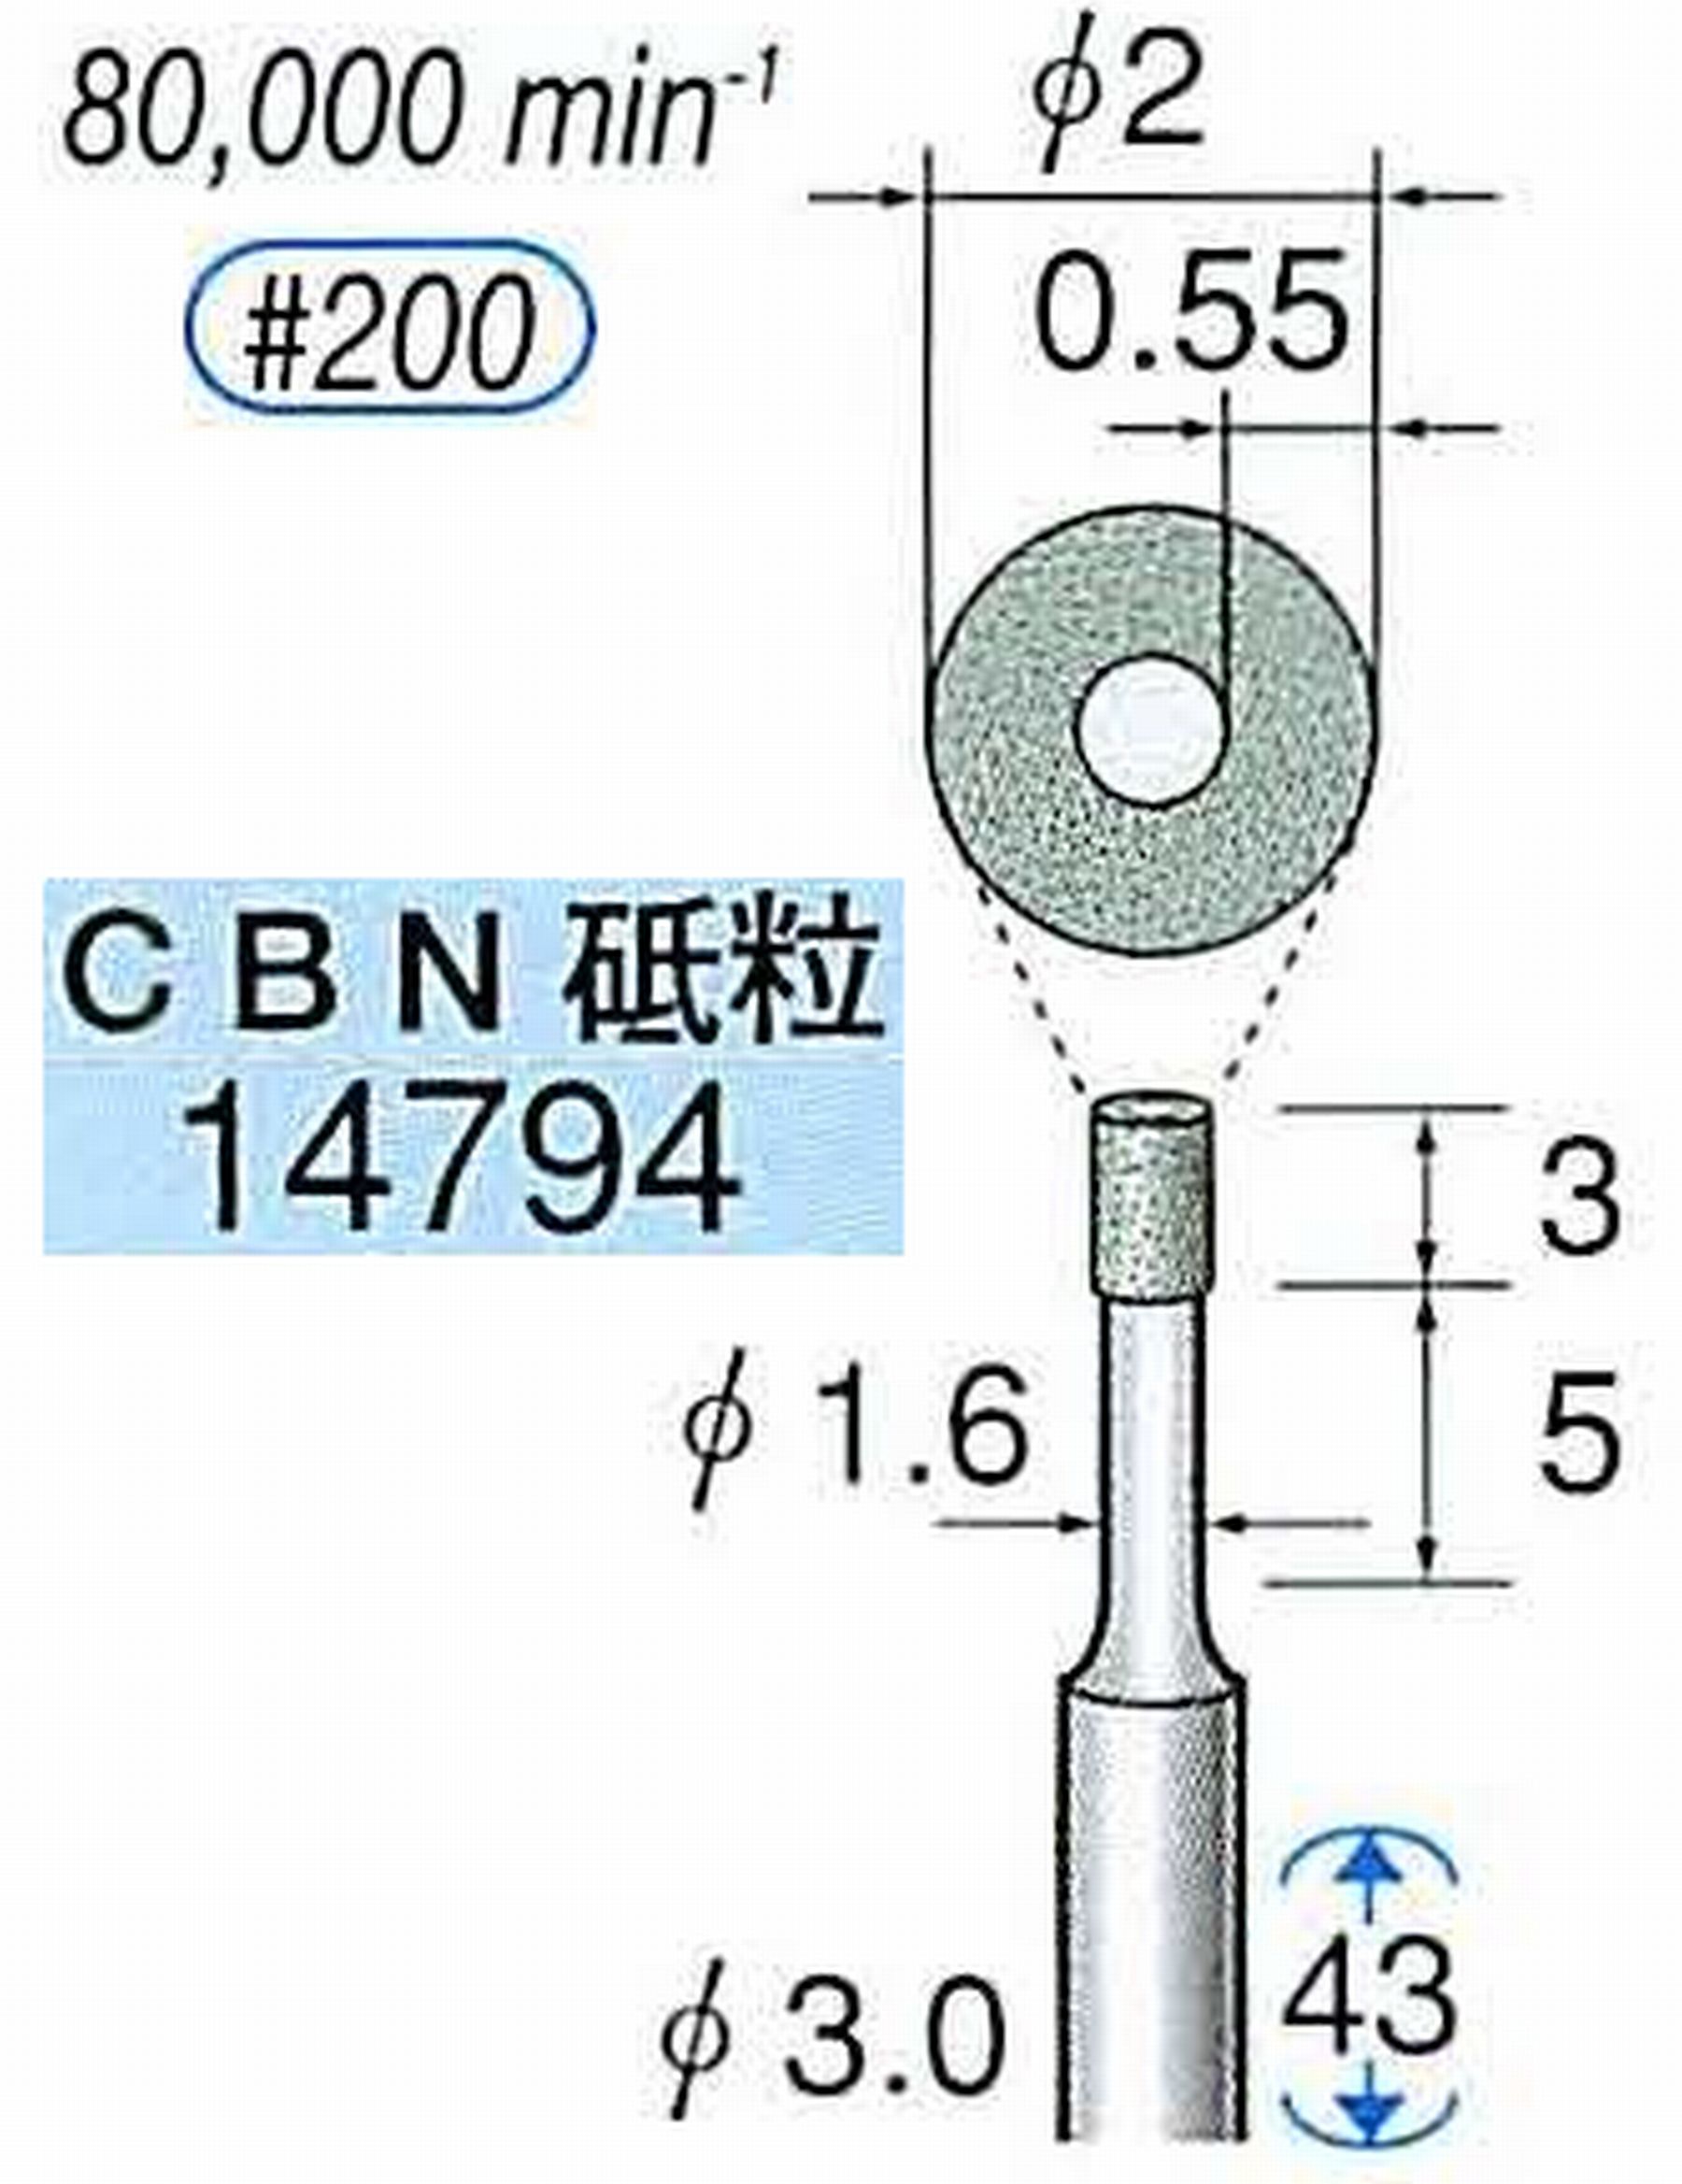 ナカニシ/NAKANISHI ビトリファイドダイヤモンド砥石 CBN砥粒 軸径(シャンク)φ3.0mm 14794